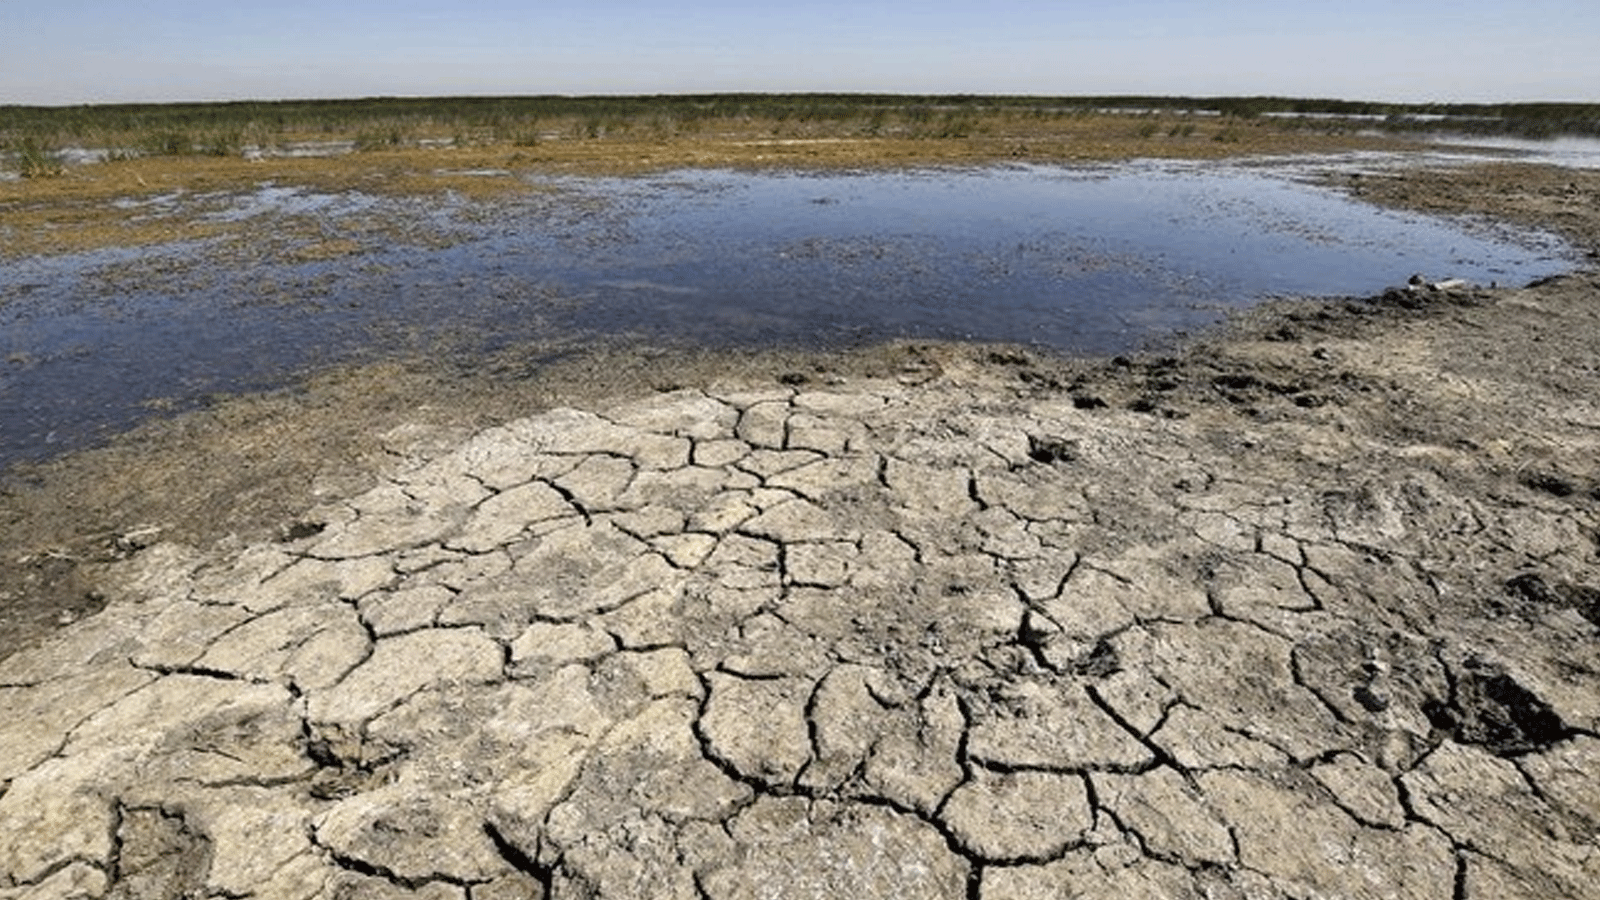  المزارعون والرعاة يعانون نقصاً شديداً في المياه جراء الجفاف العراق